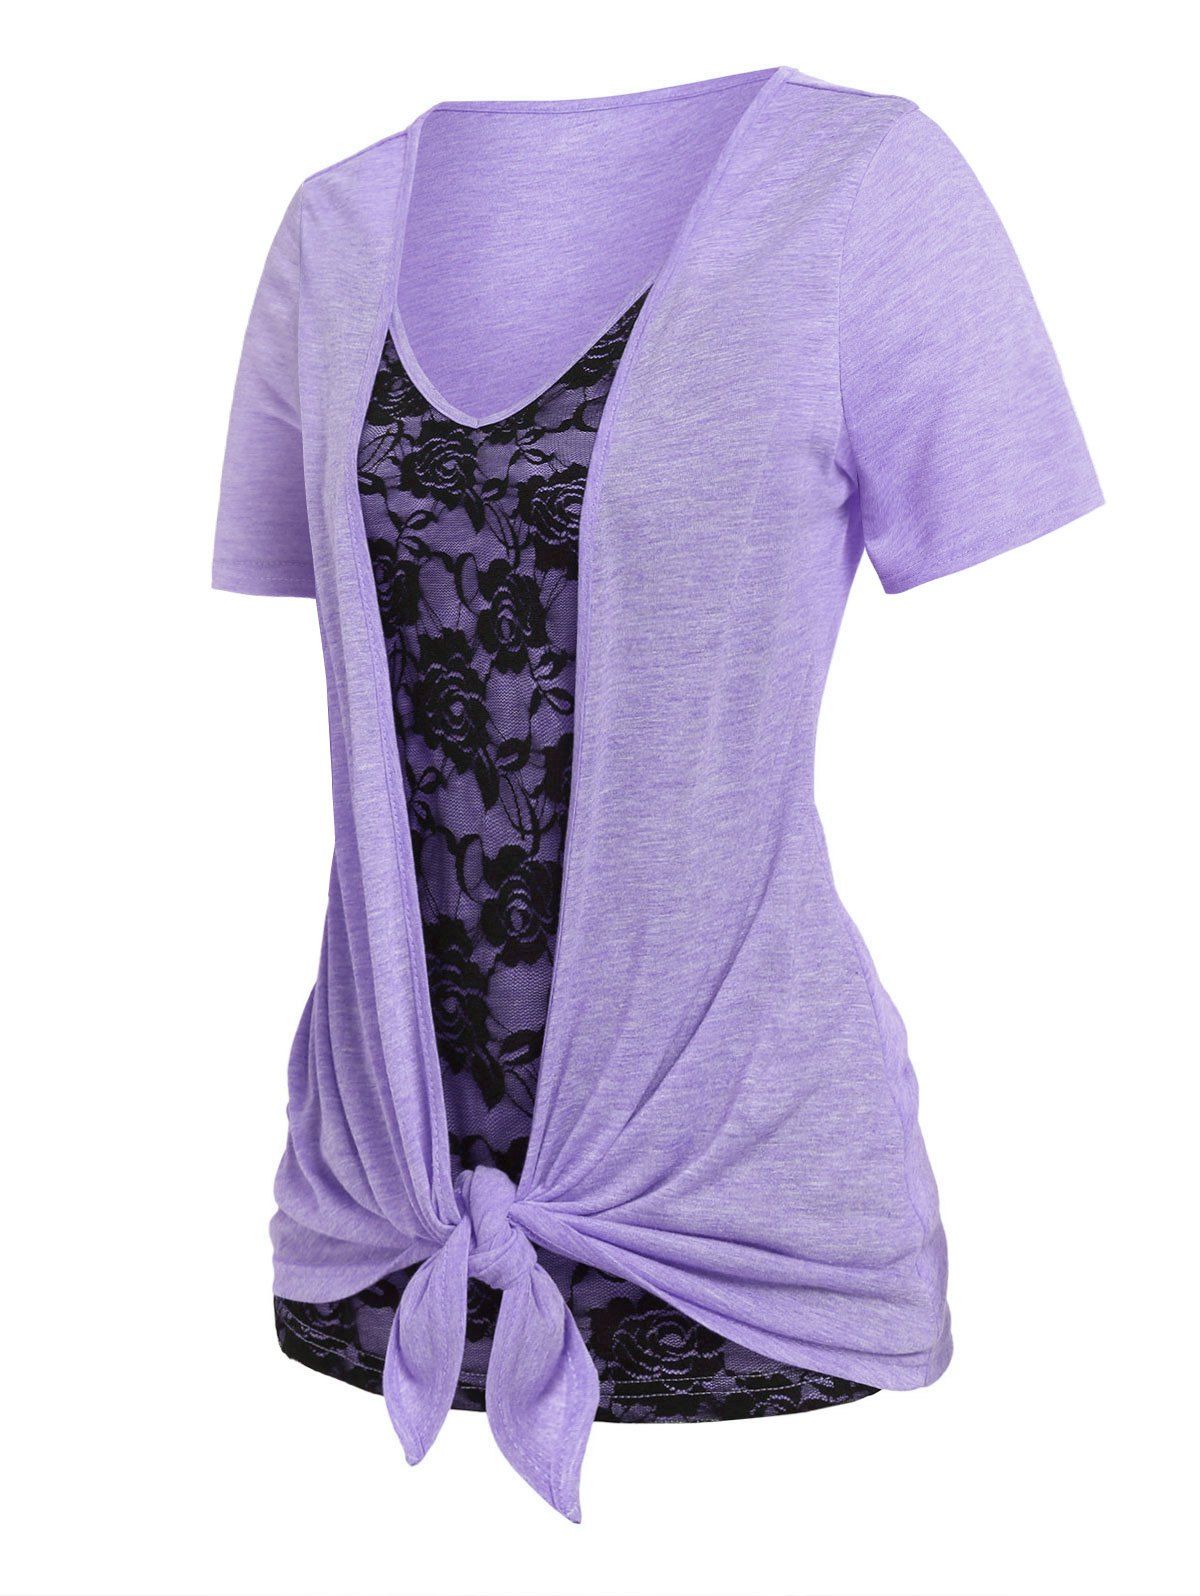 T-shirt Drapé Bicolore Panneau en Dentelle de Grande Taille - Violet clair 4X